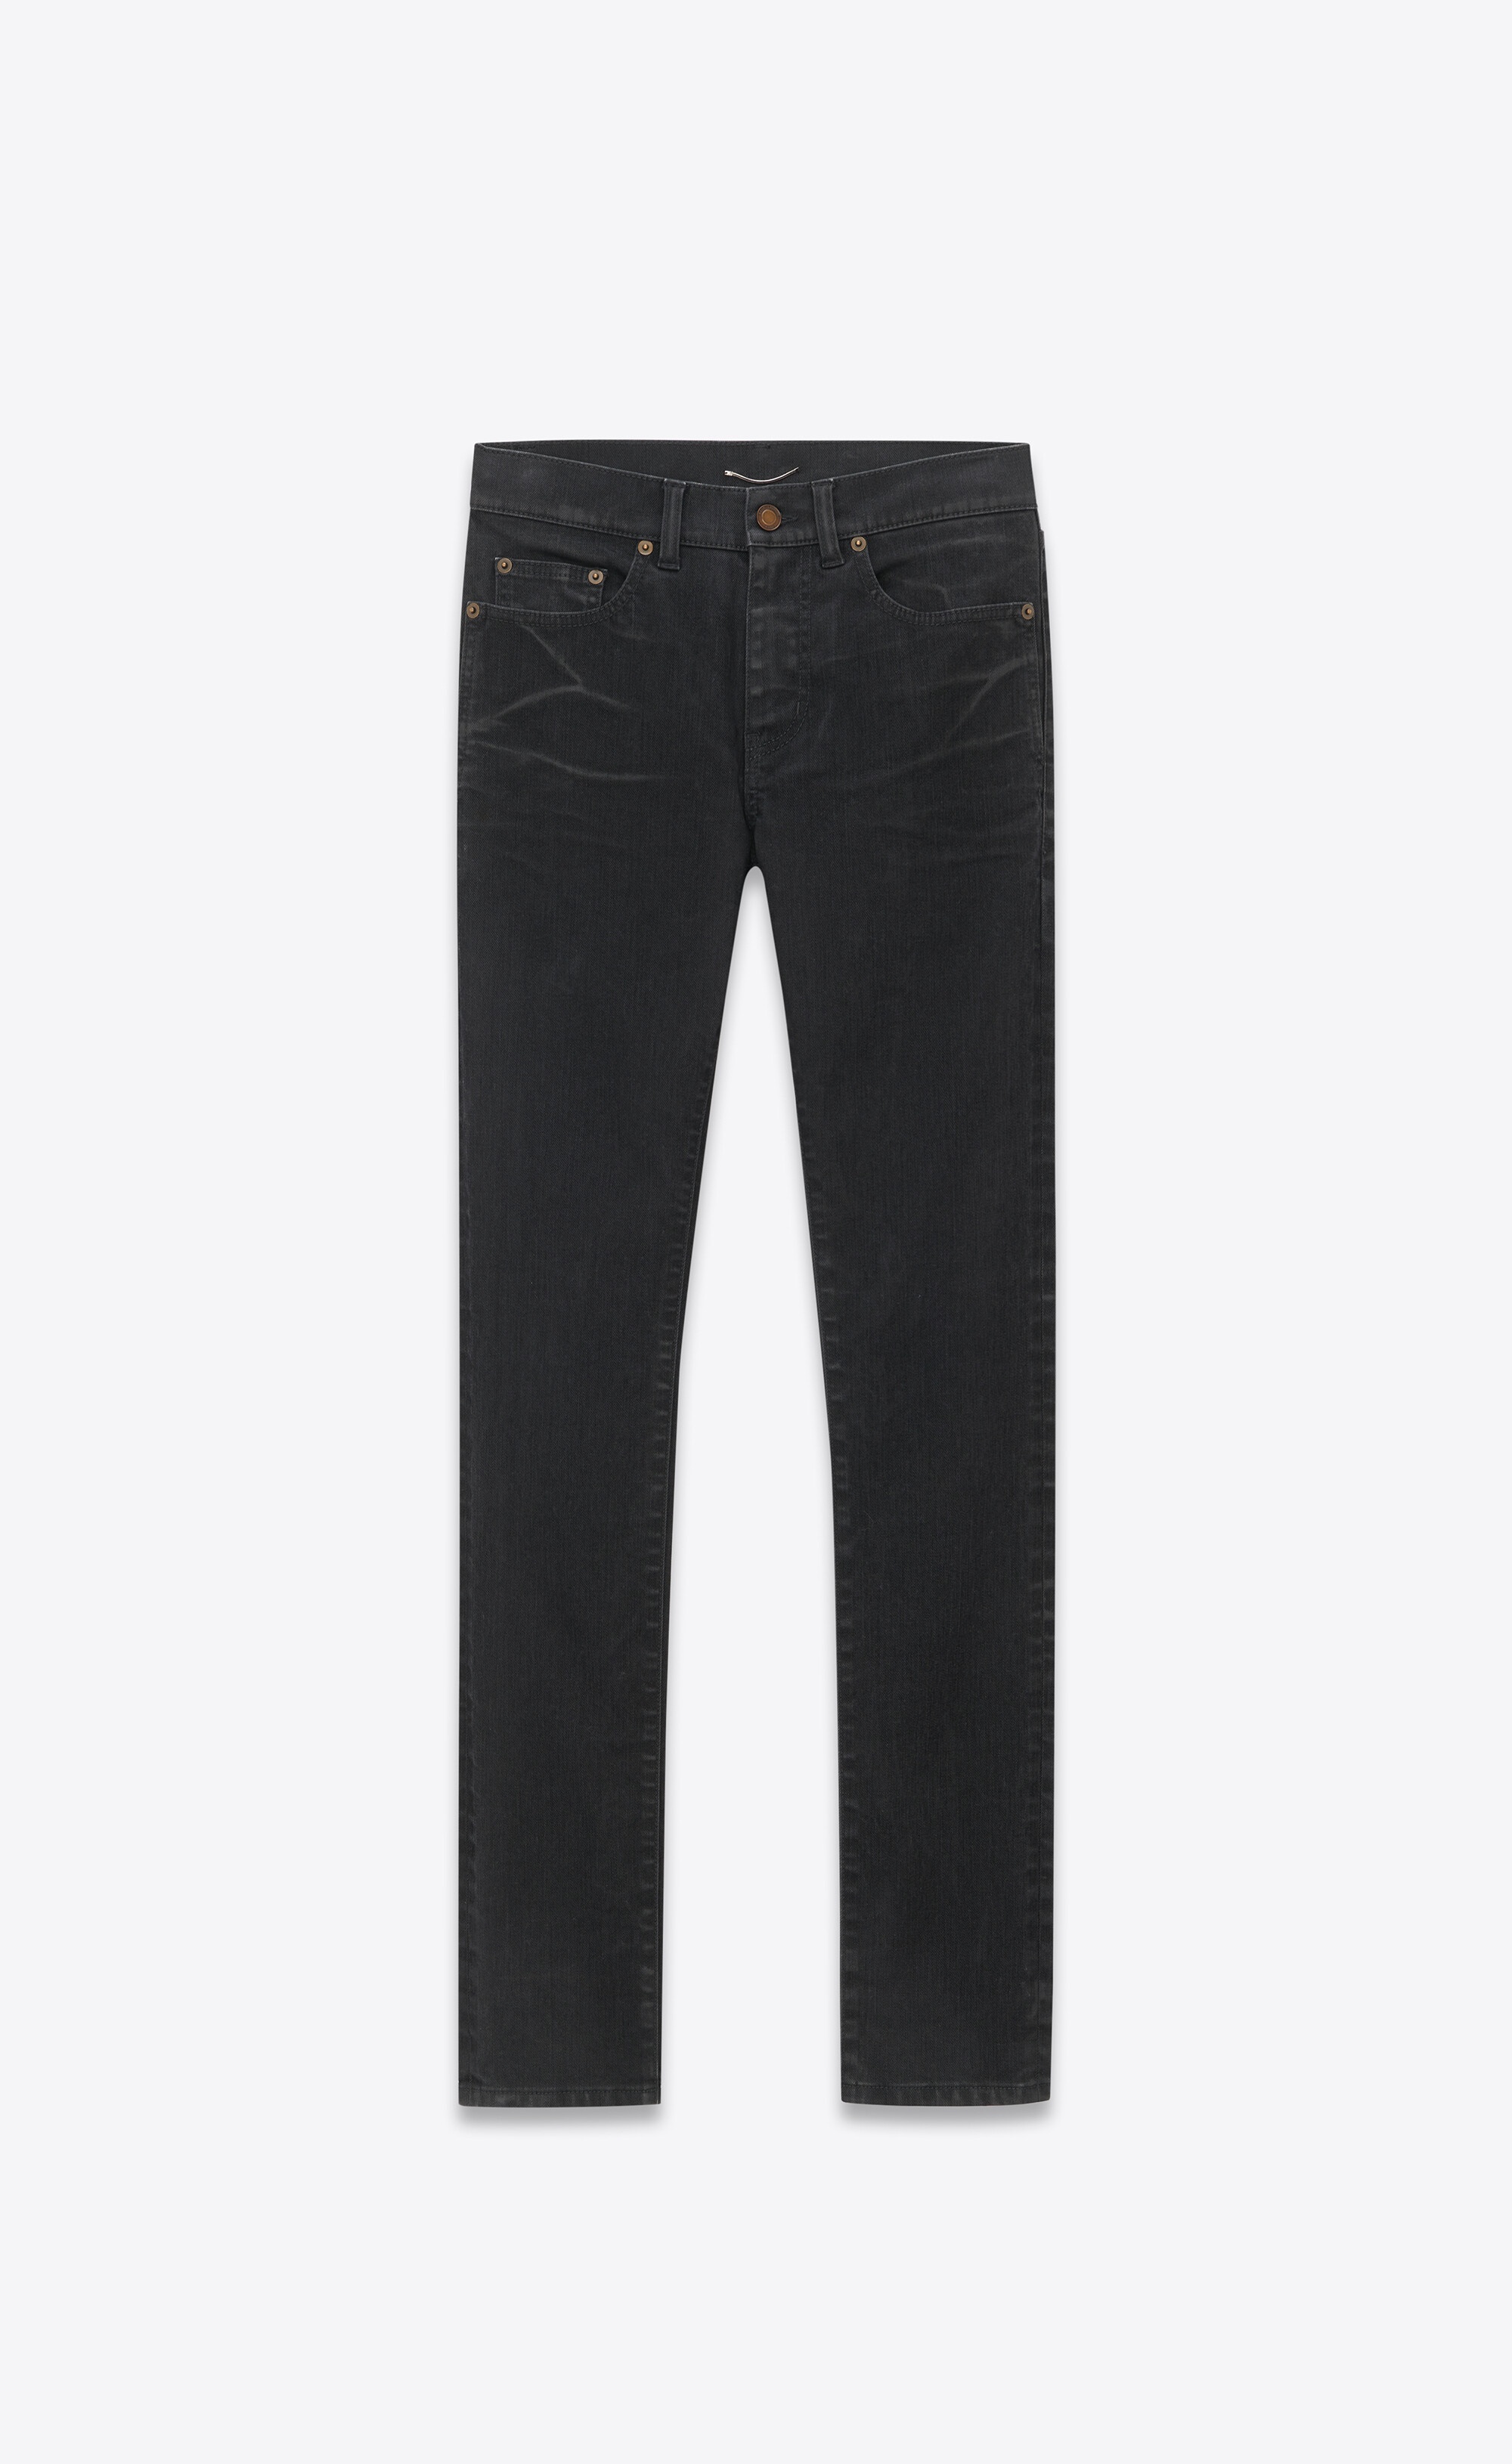 skinny jeans in light glazed black denim - 1